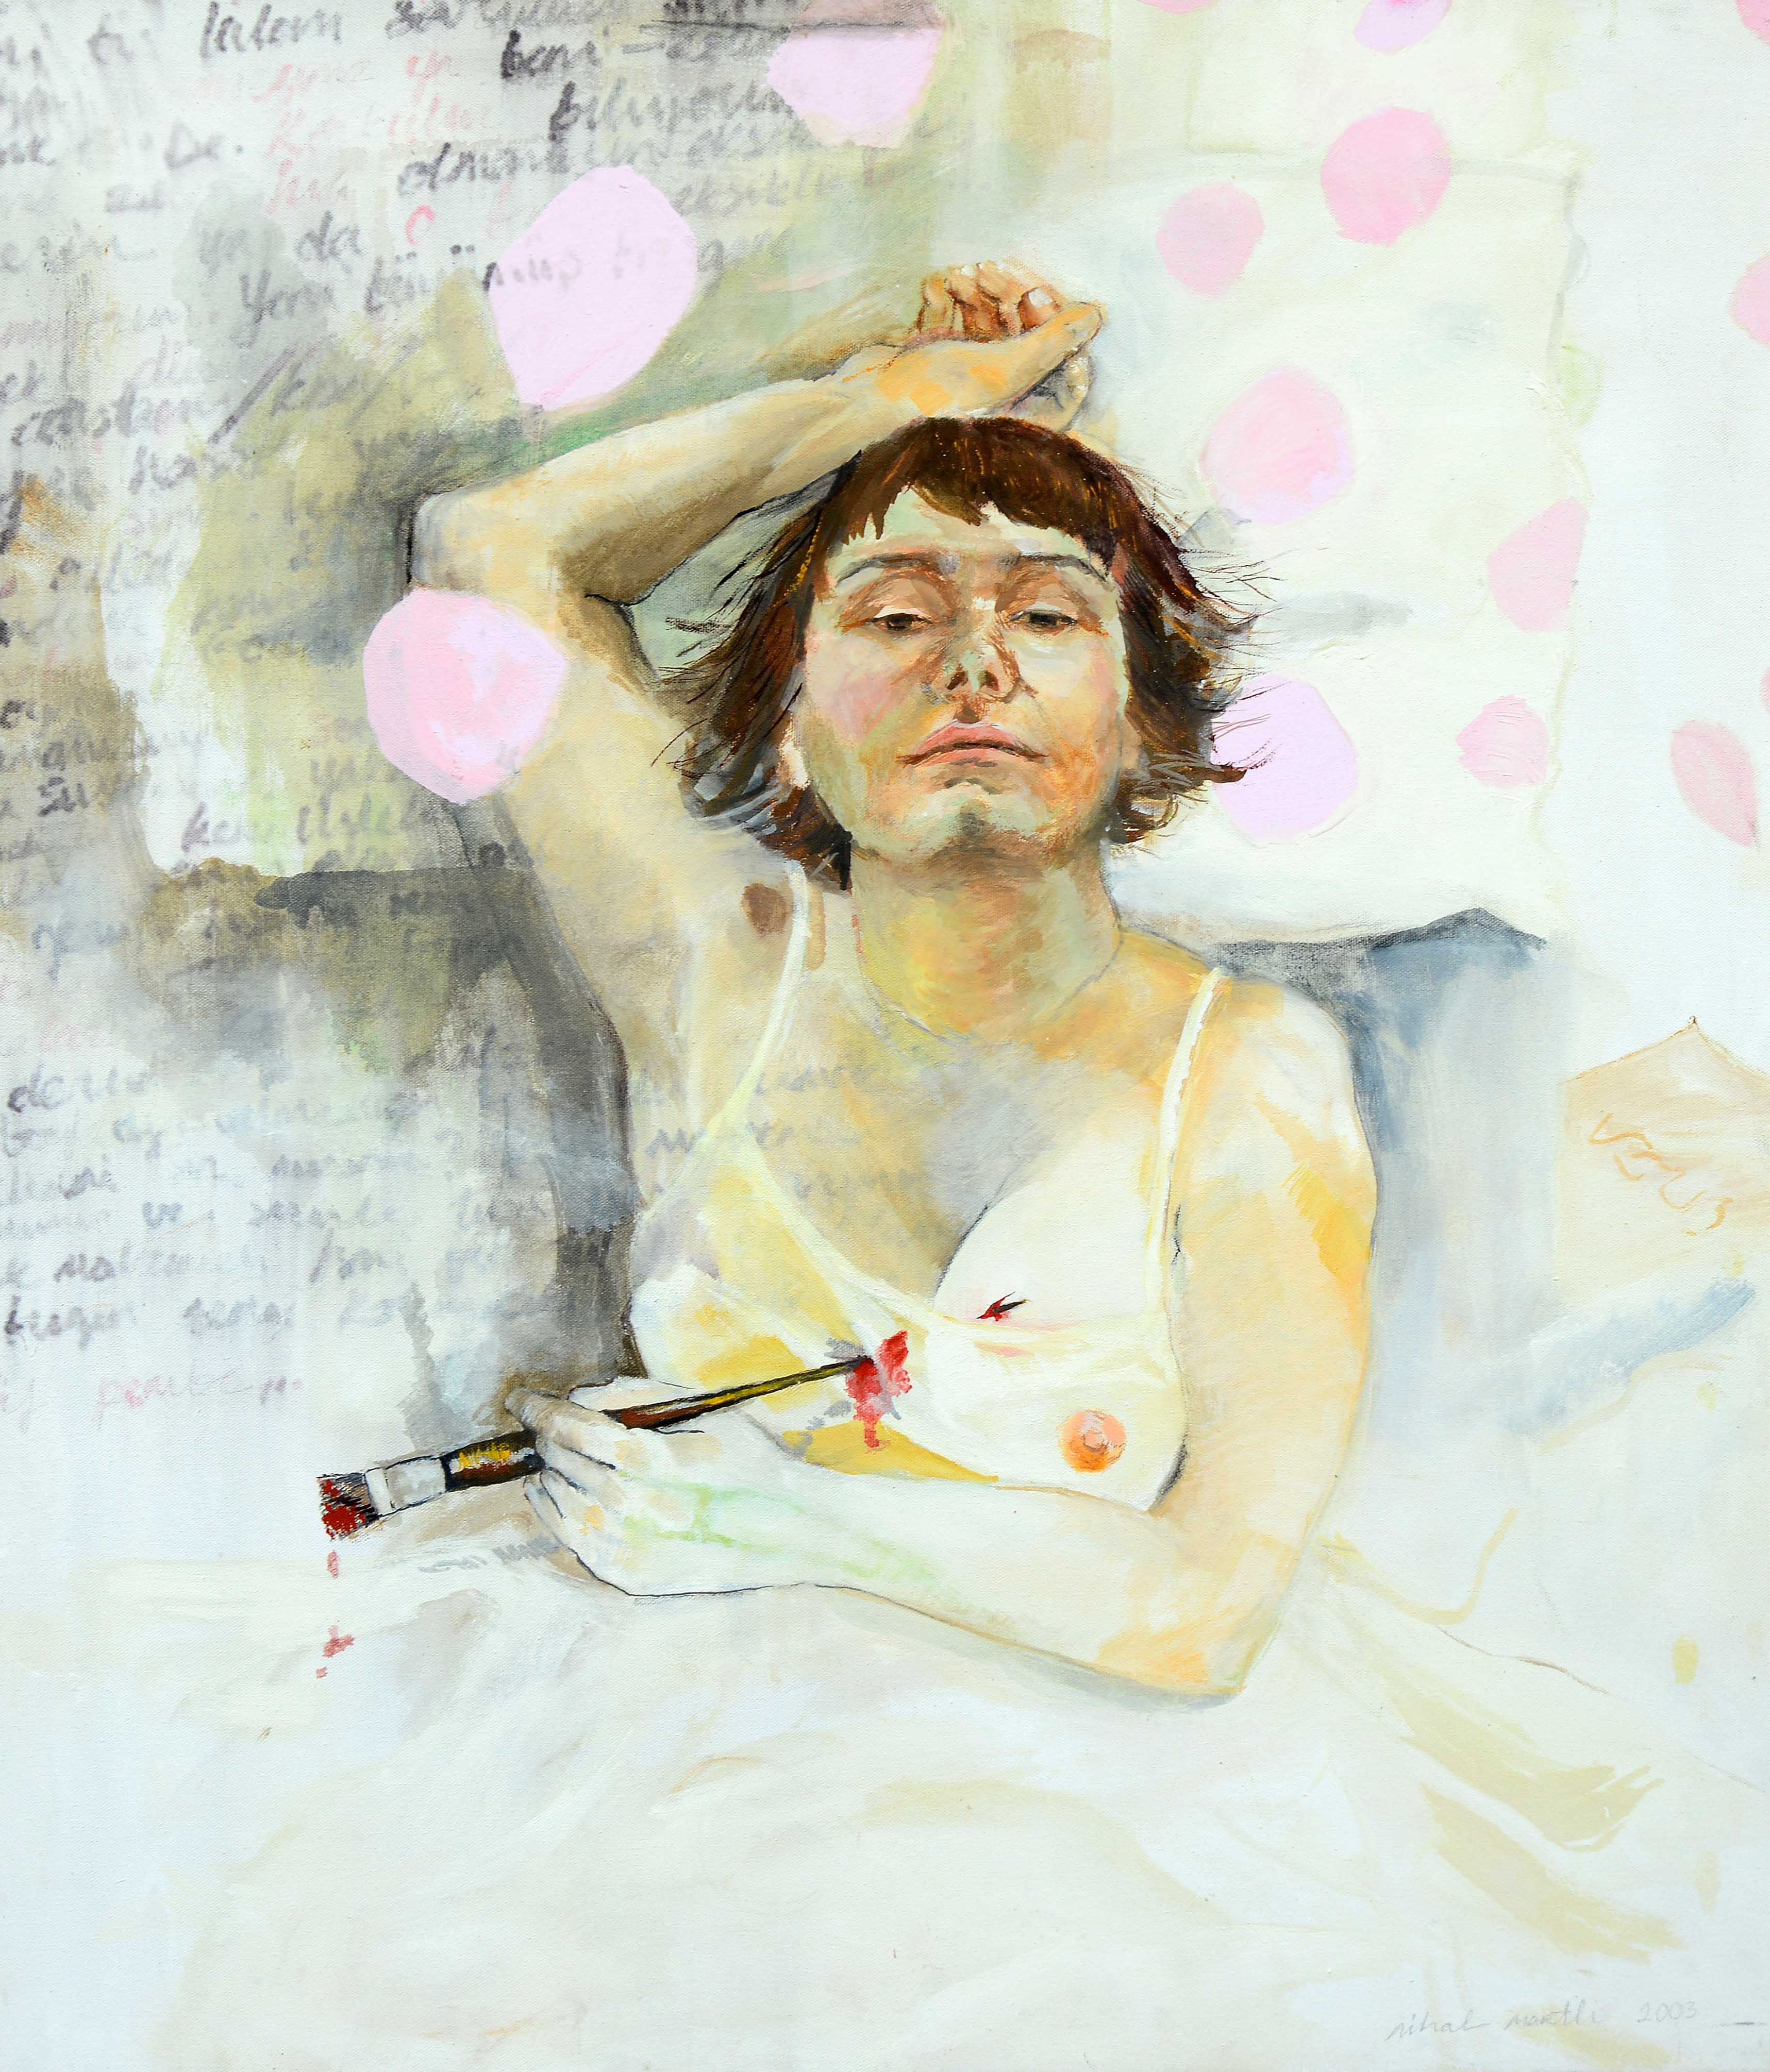 İsimsiz- Untitled, 2003, Tuval üzerine yağlıboya- Oil on canvas, 80×70 cm